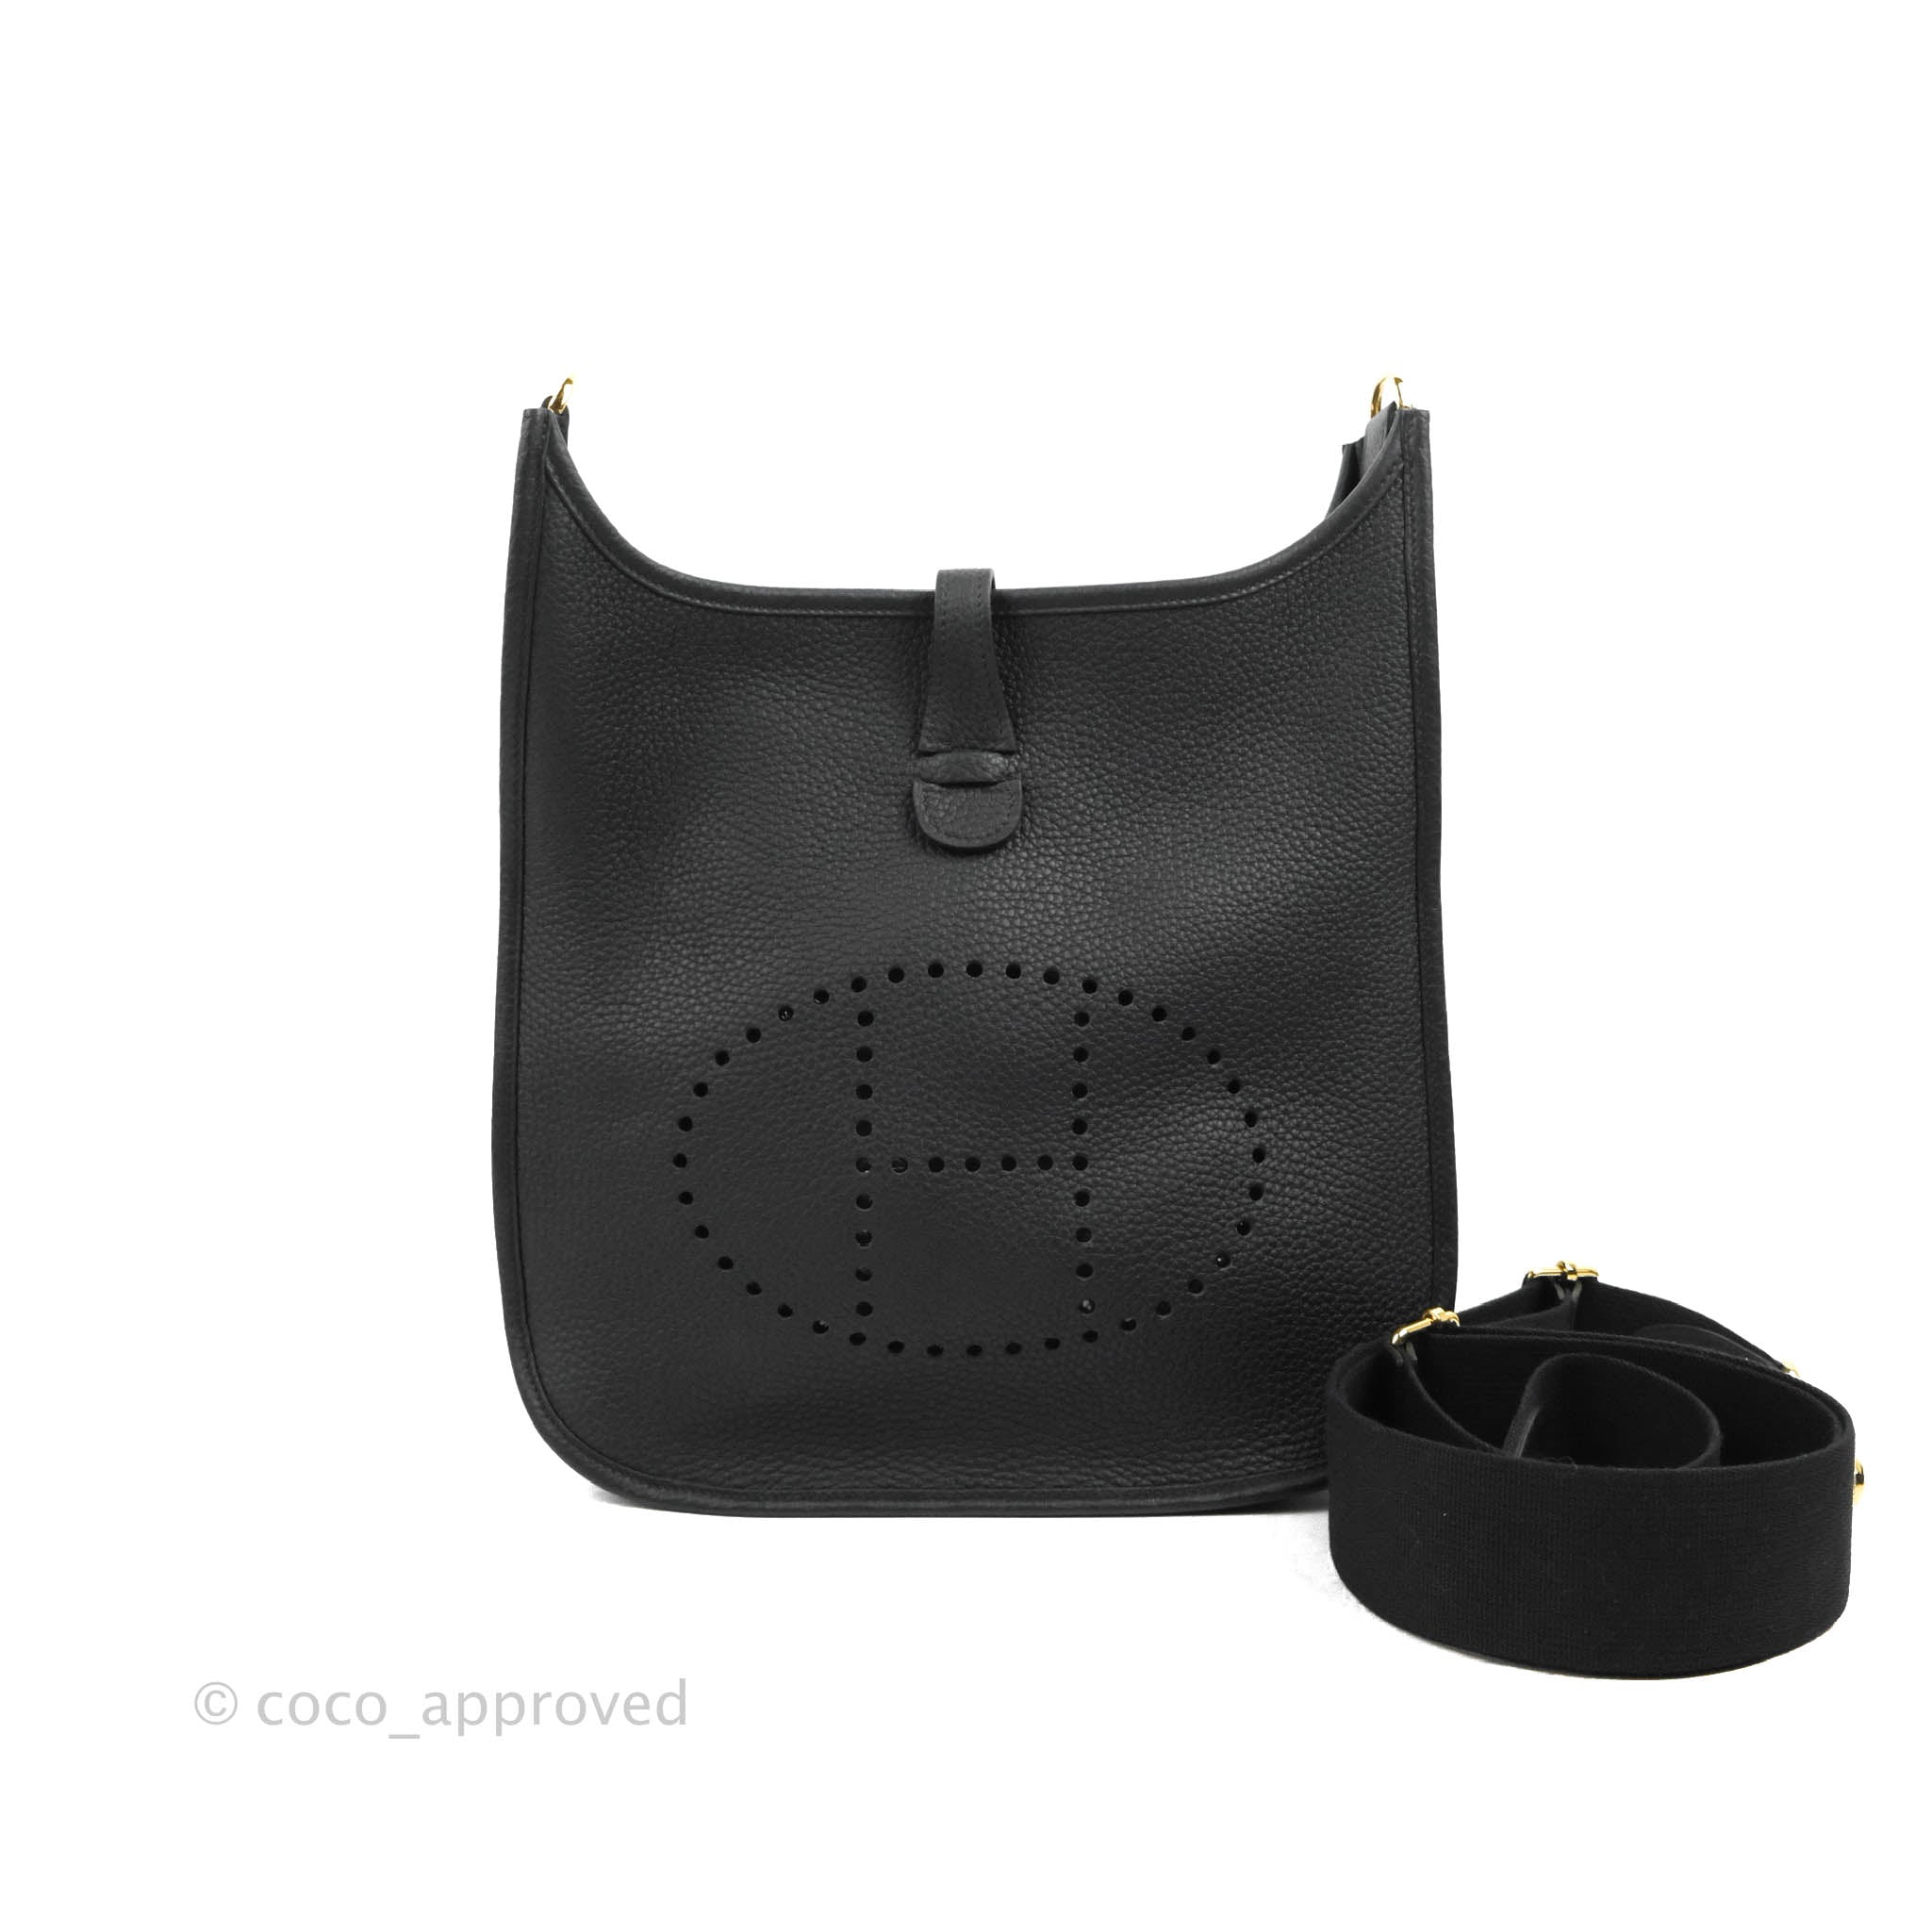 Hermes Evelyne III 29 Bag In Black (Noir) With Gold Hardware